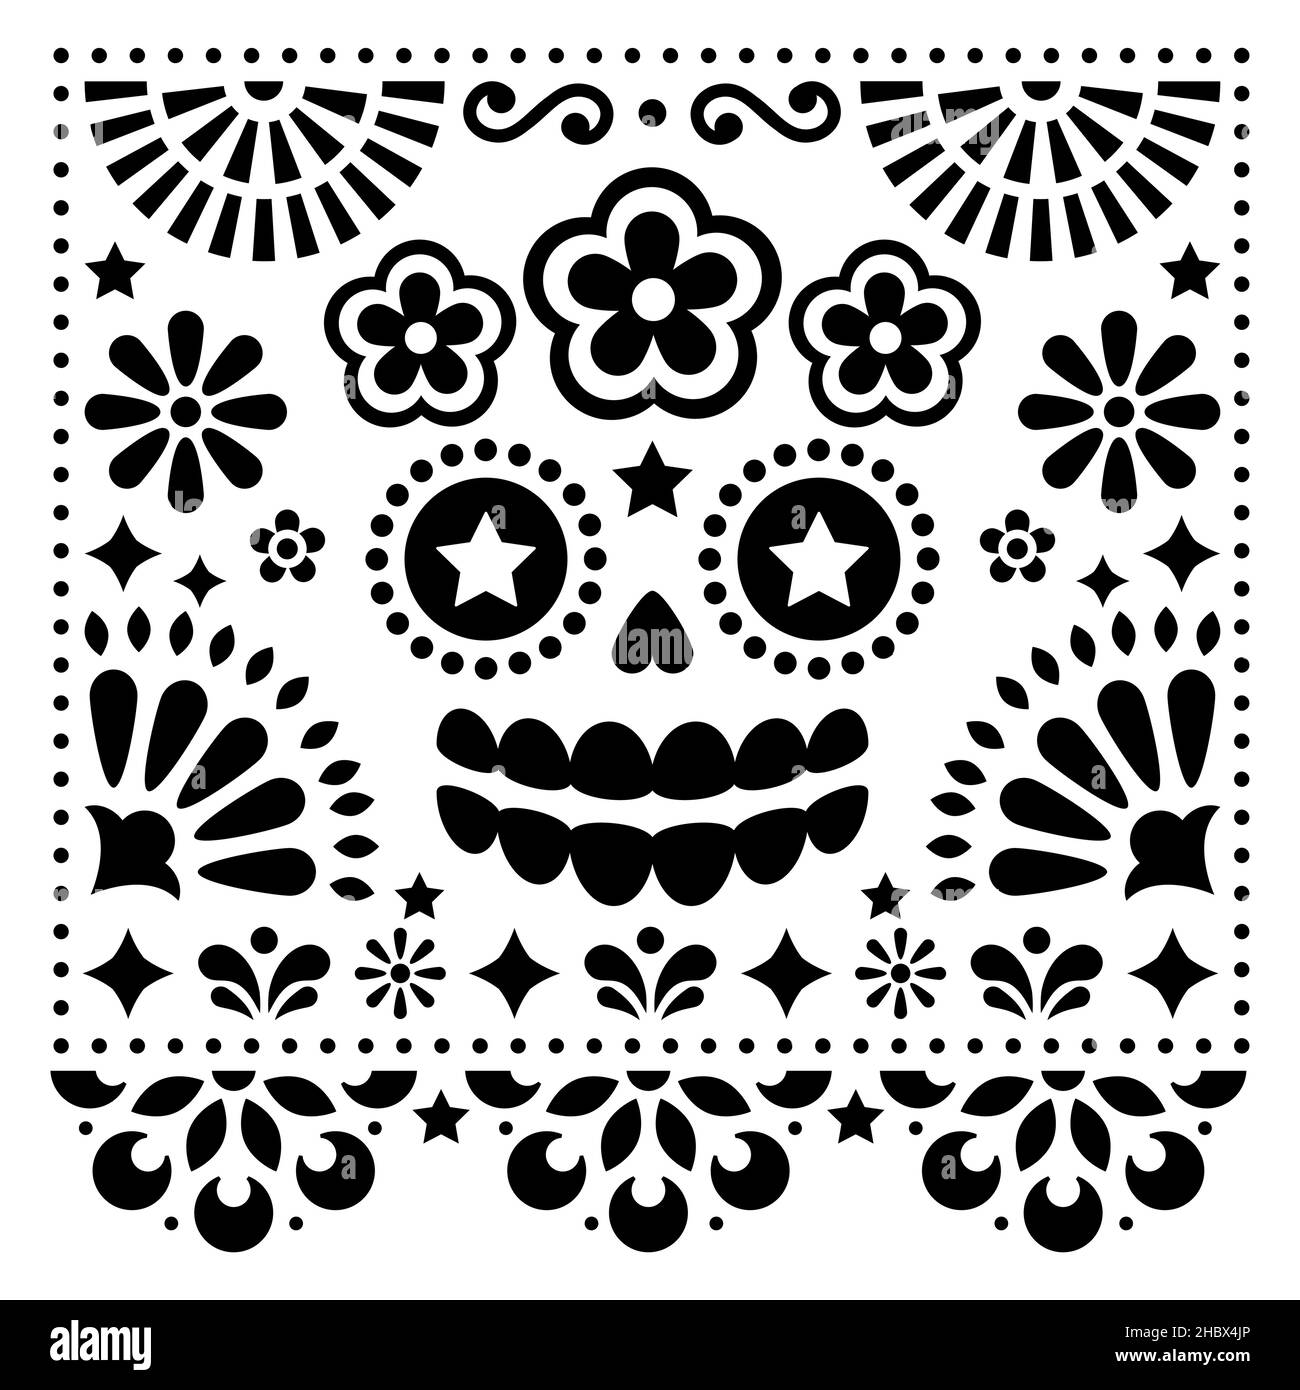 Mexikanische Volkskunst Vektor Volkskunst Design mit Zucker Schädel und Blumen, Halloween und Tag der Toten schwarz Muster auf weißem Hintergrund - Grußkarte Stock Vektor